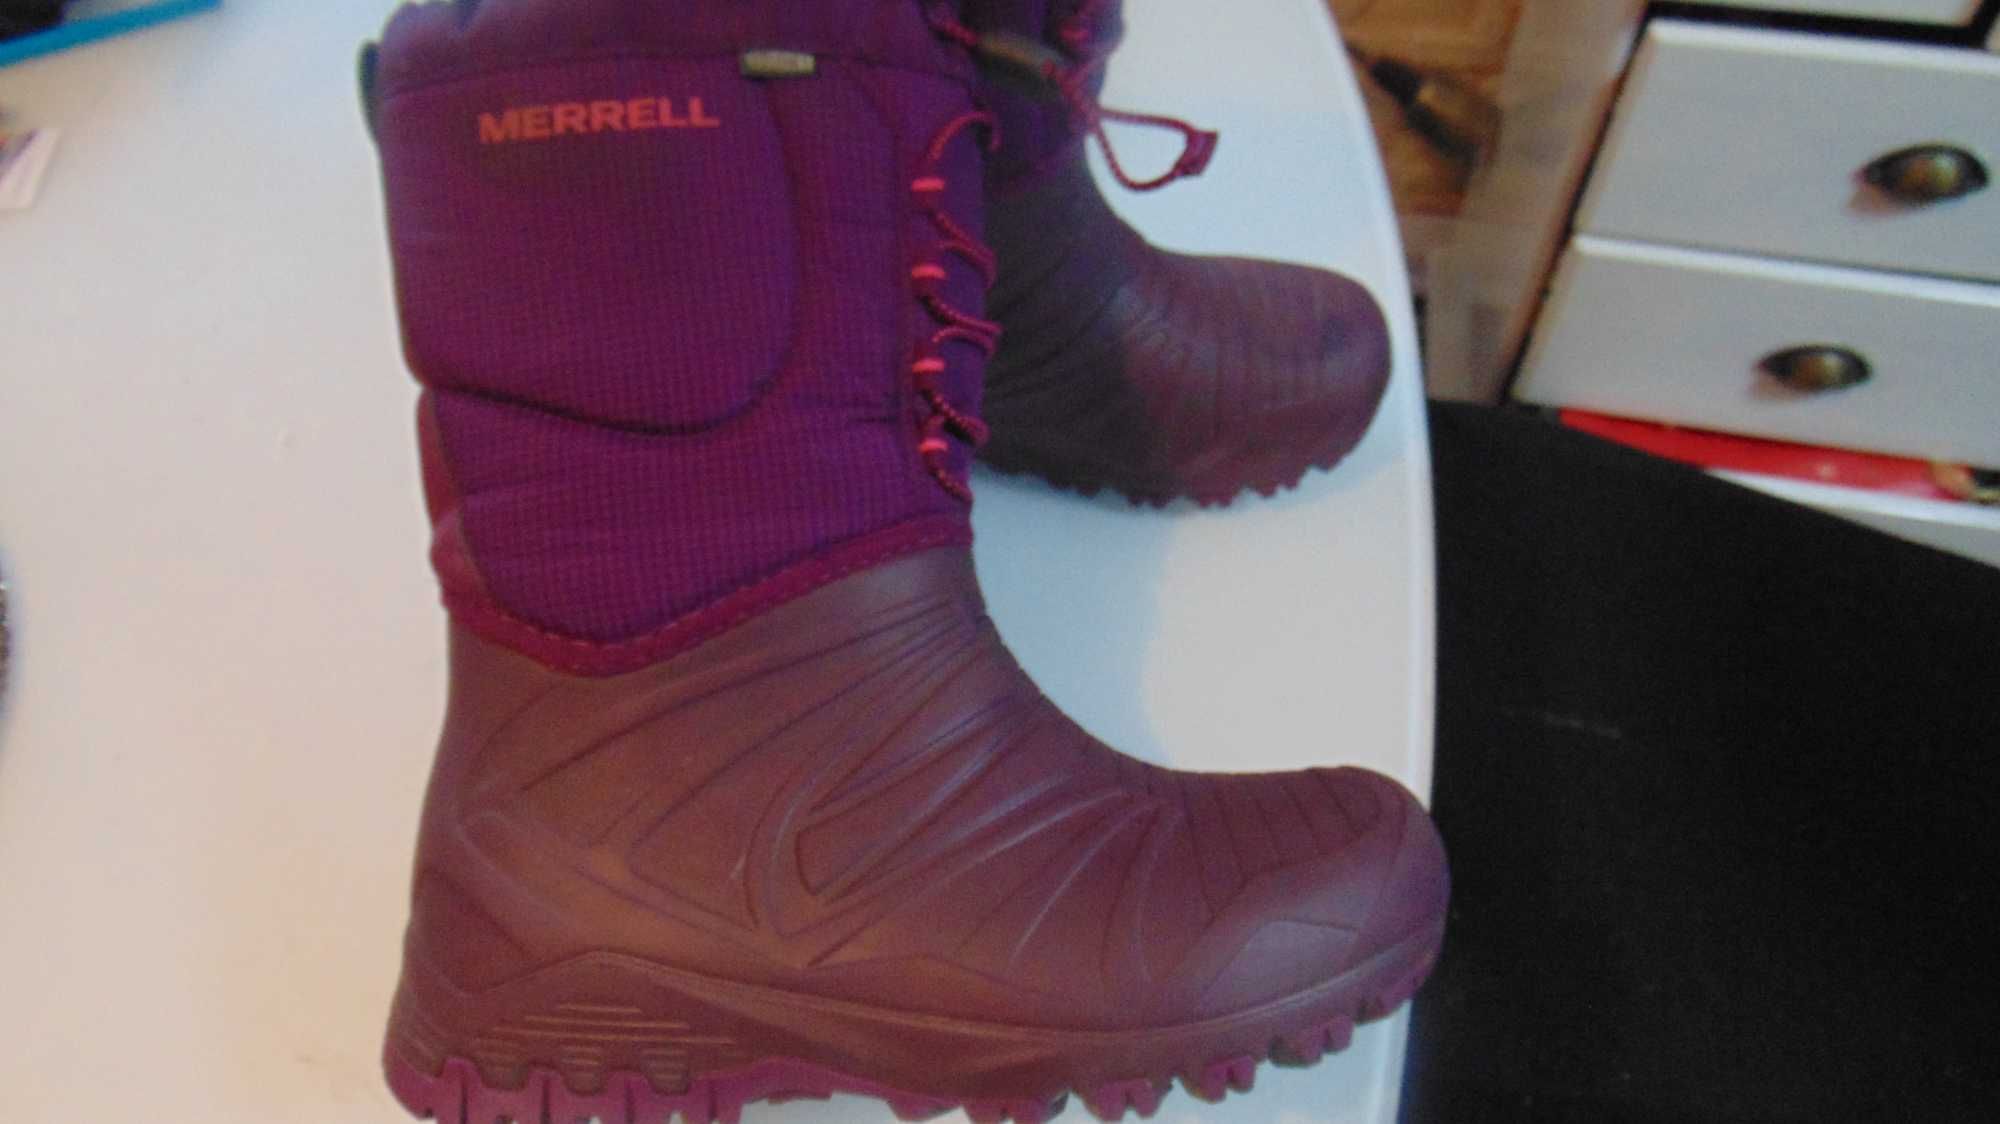 merrell select DRY thermolite roz uk2 eur34 świetne śniegowce